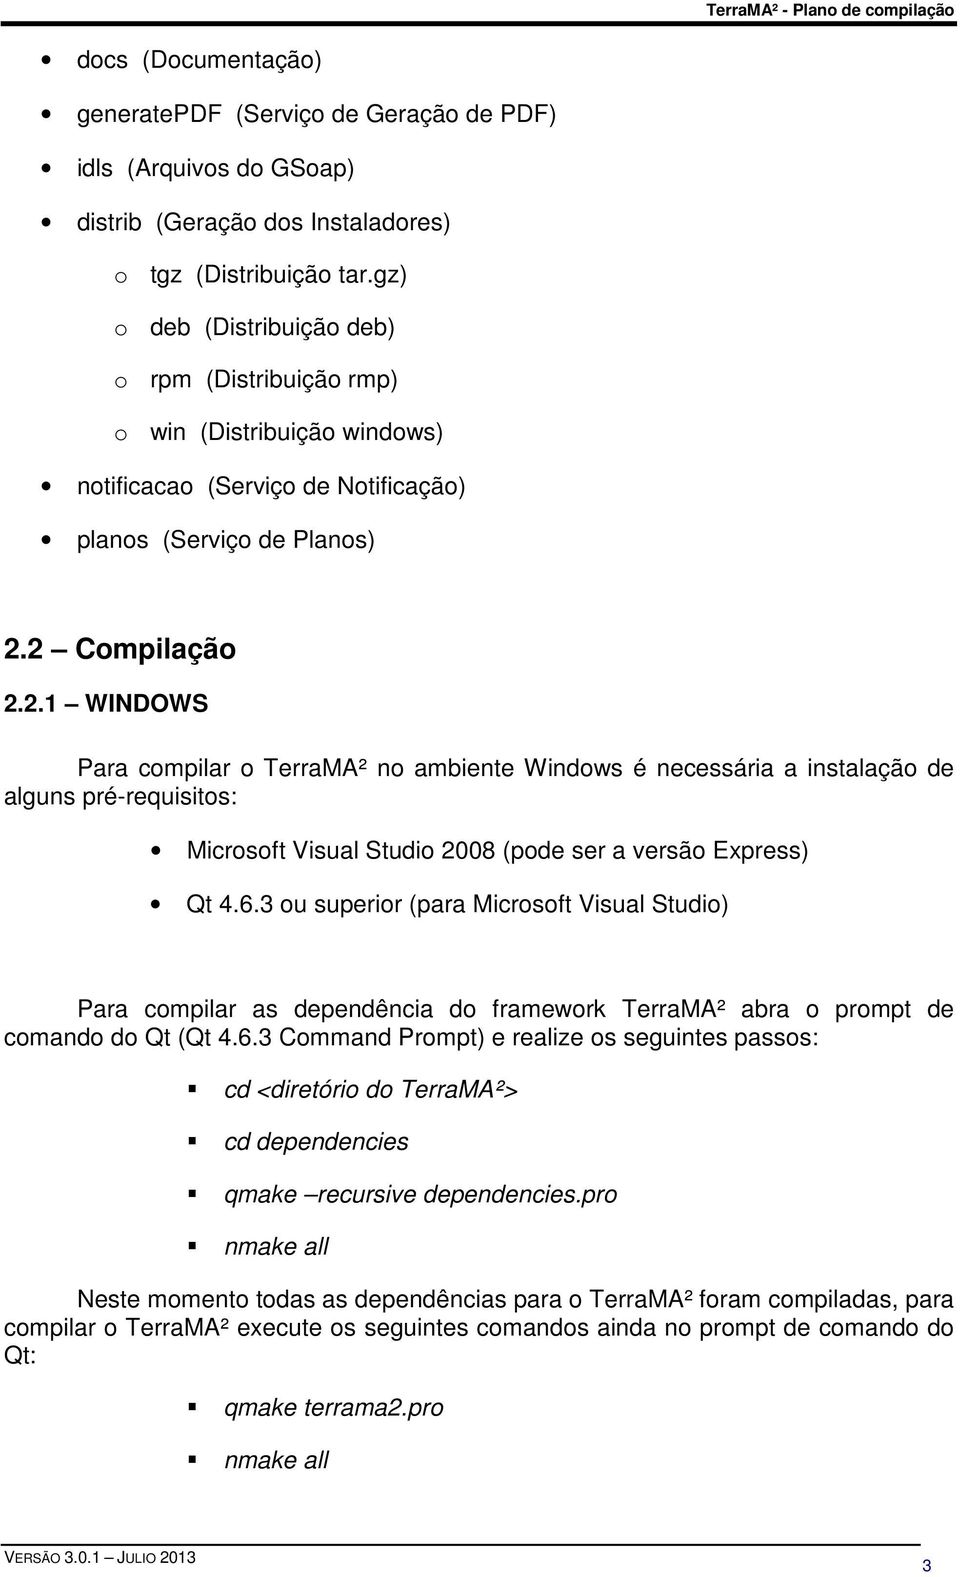 2 Compilação 2.2.1 WINDOWS Para compilar o TerraMA² no ambiente Windows é necessária a instalação de alguns pré-requisitos: Microsoft Visual Studio 2008 (pode ser a versão Express) Qt 4.6.